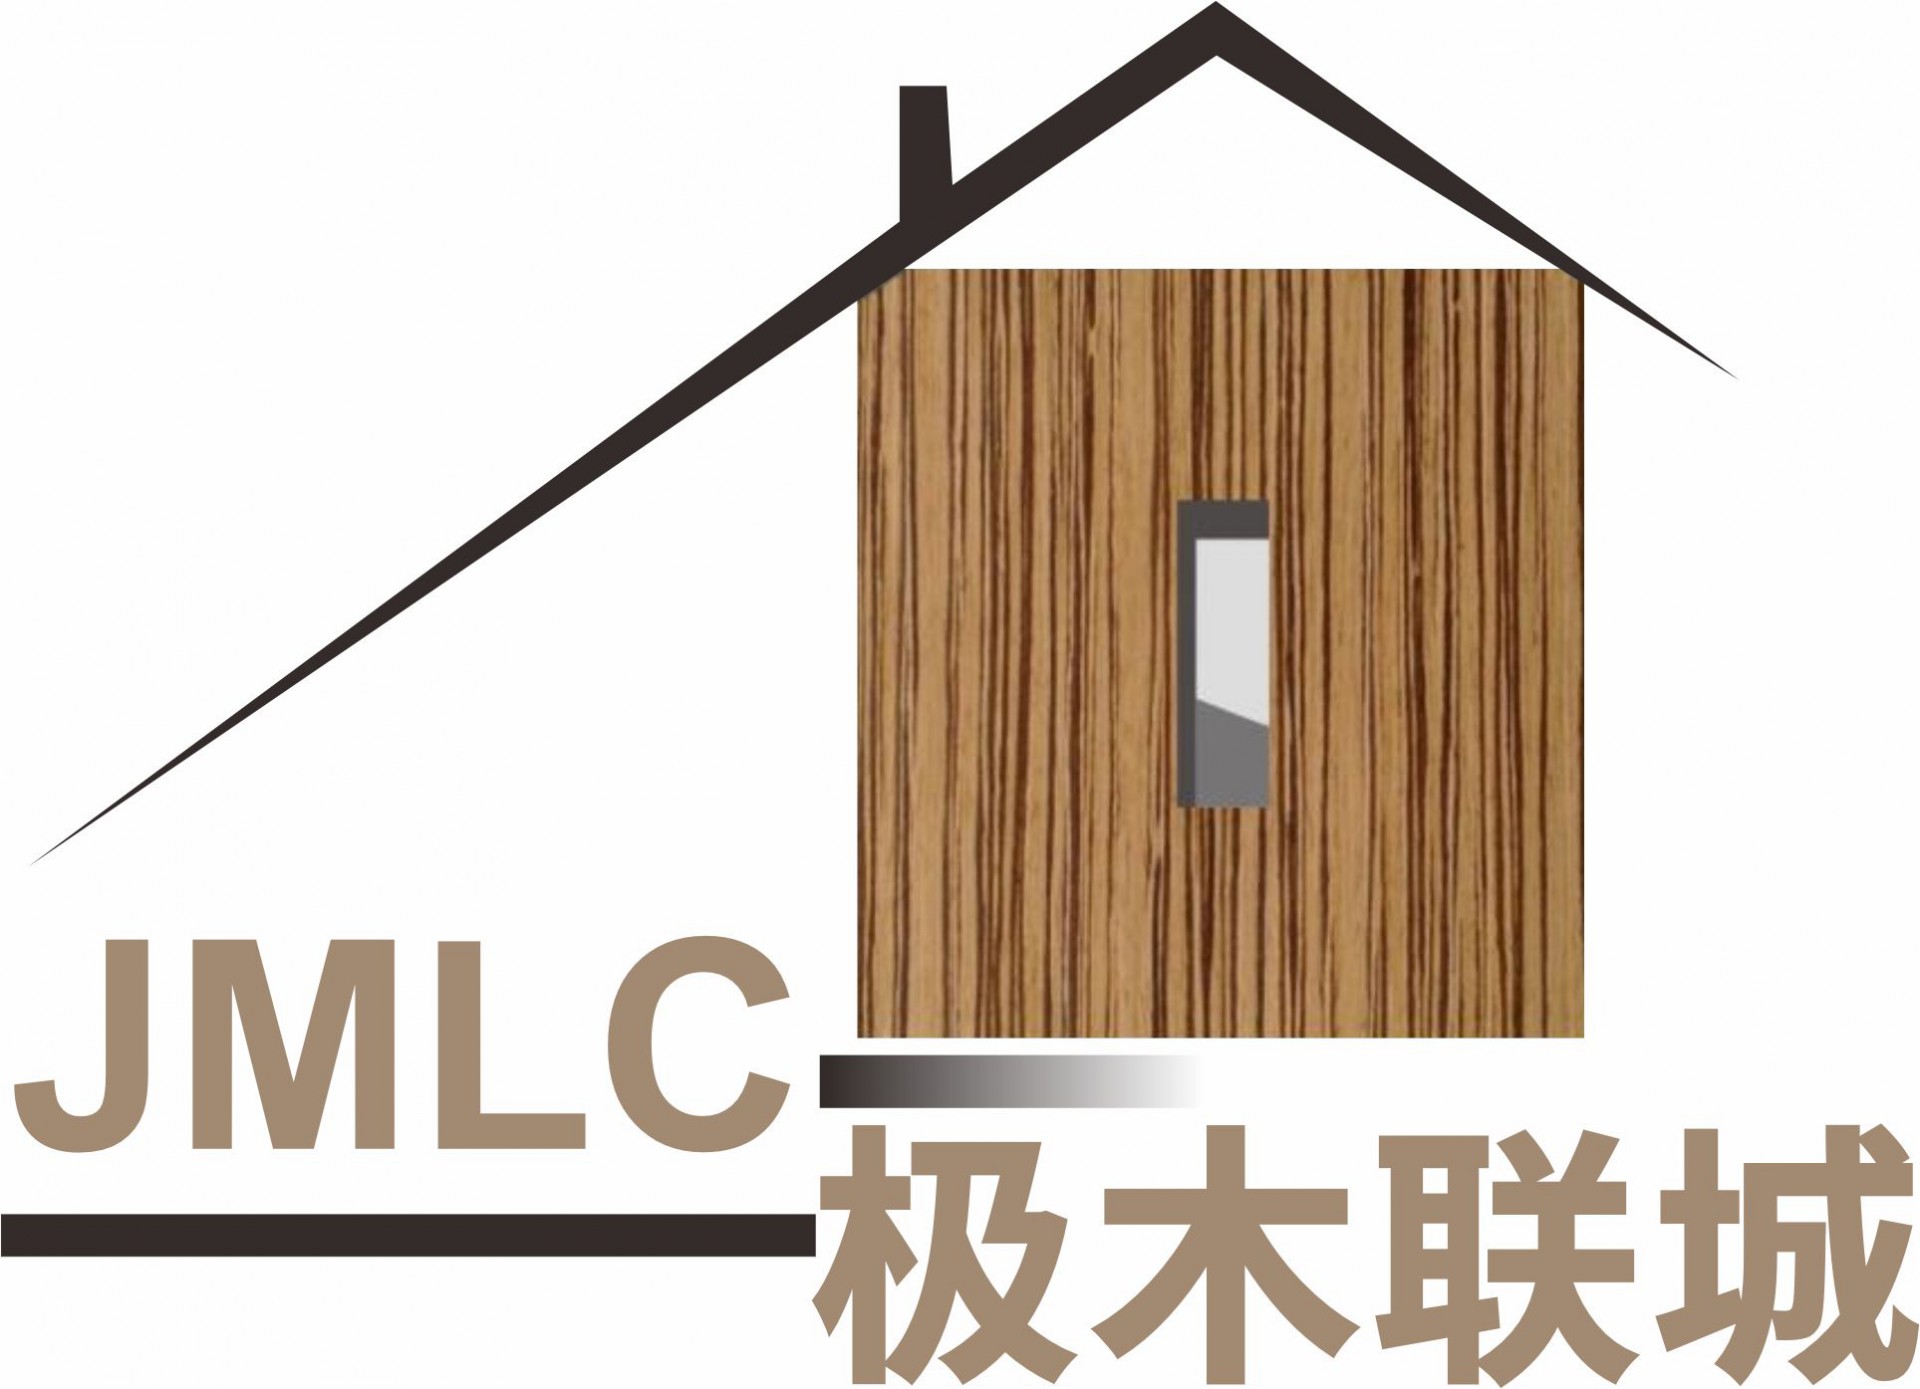 极木木纹logo字体变更1026  - 副本.jpg